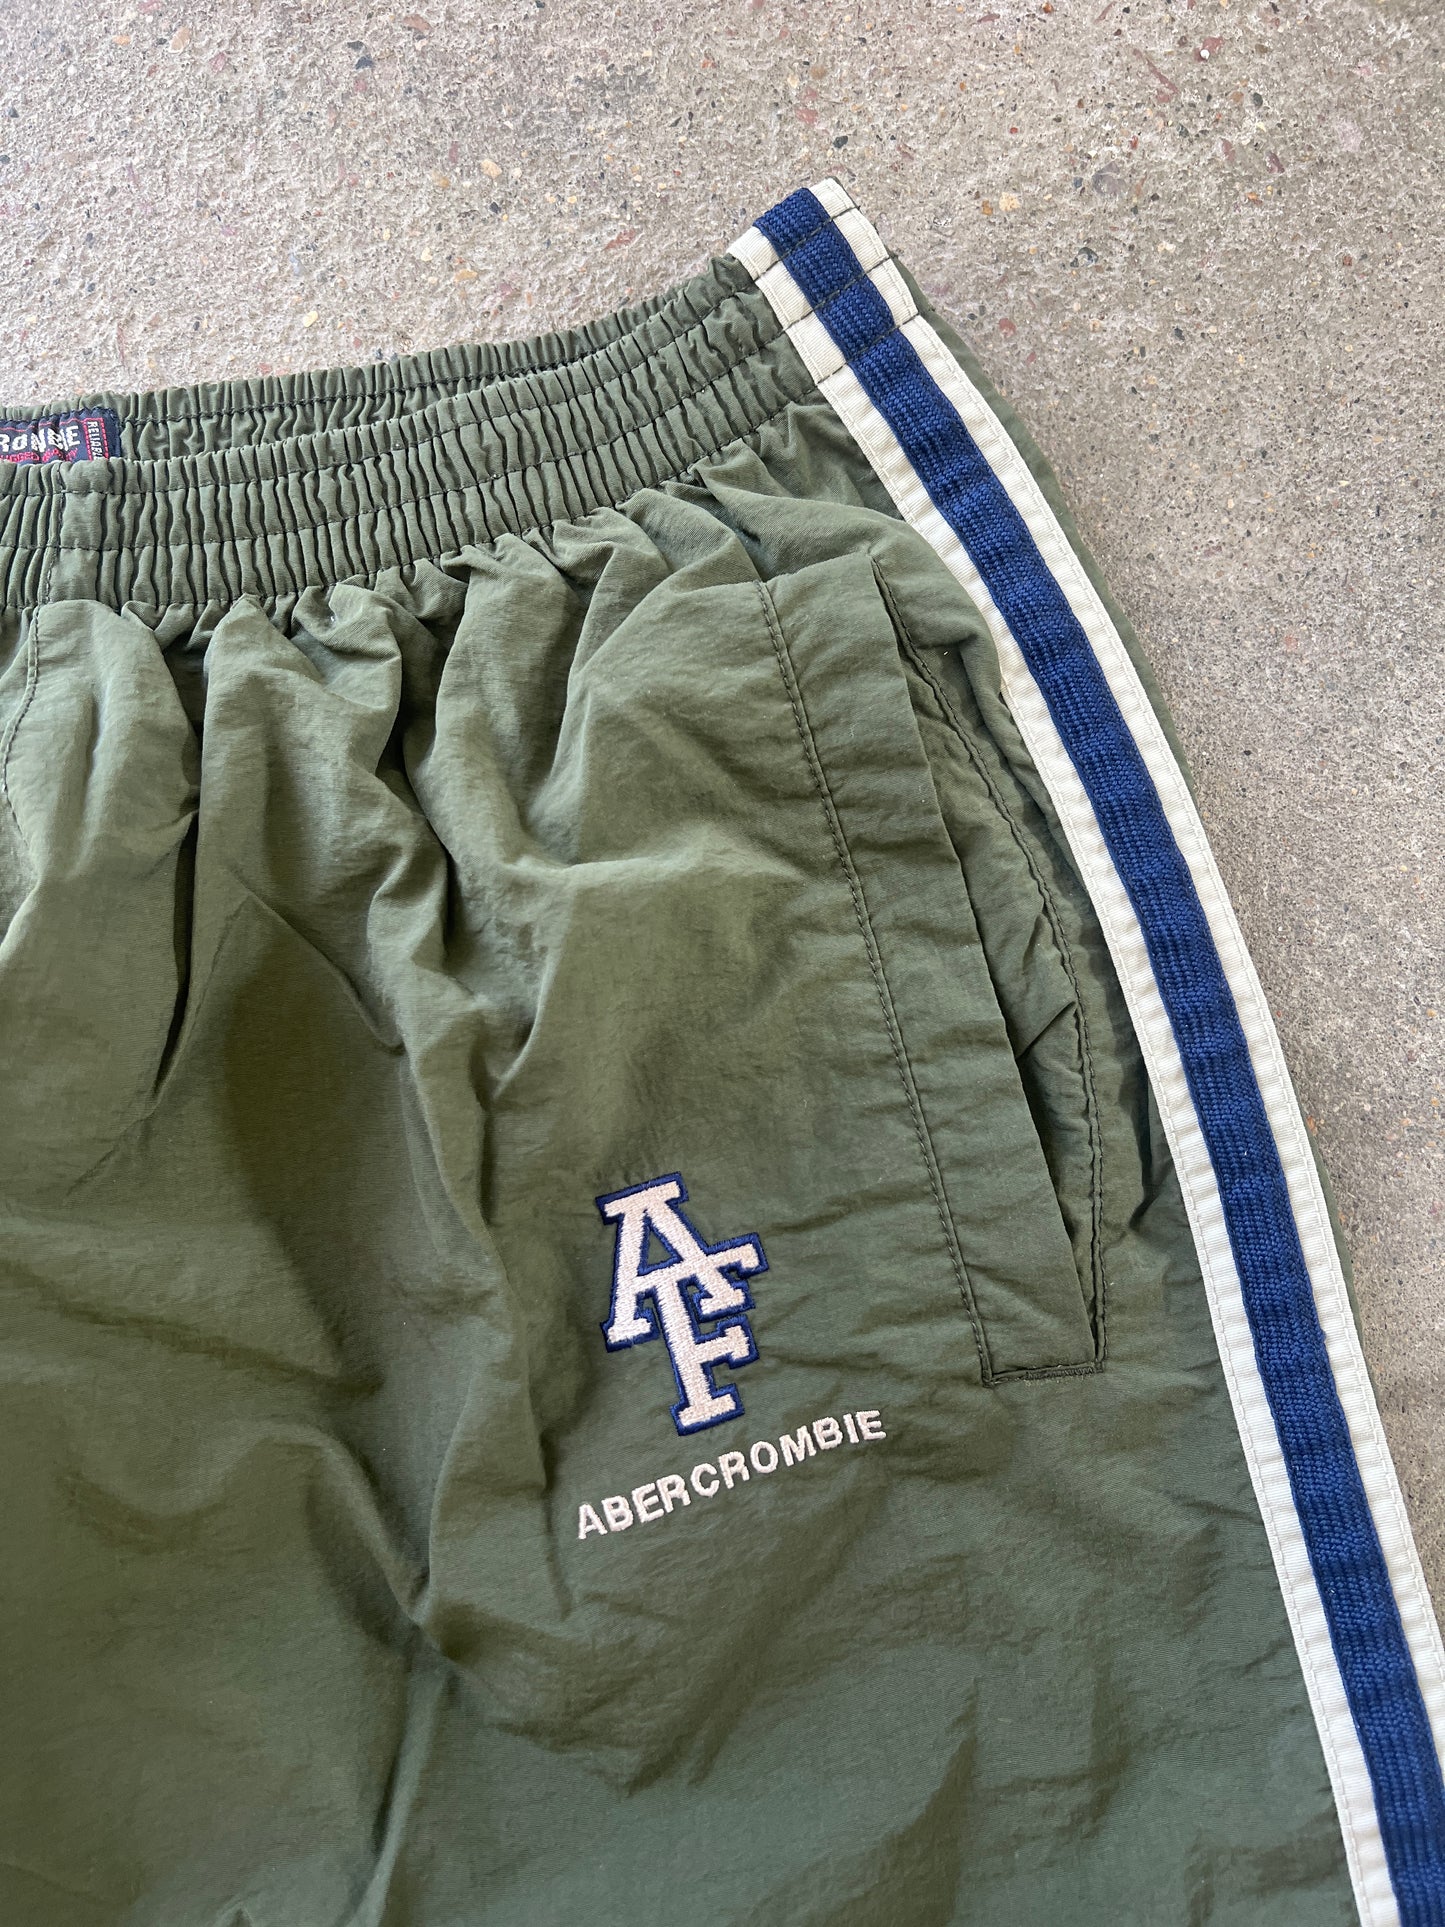 Vintage Abercrombie & Fitch Track Pants - L